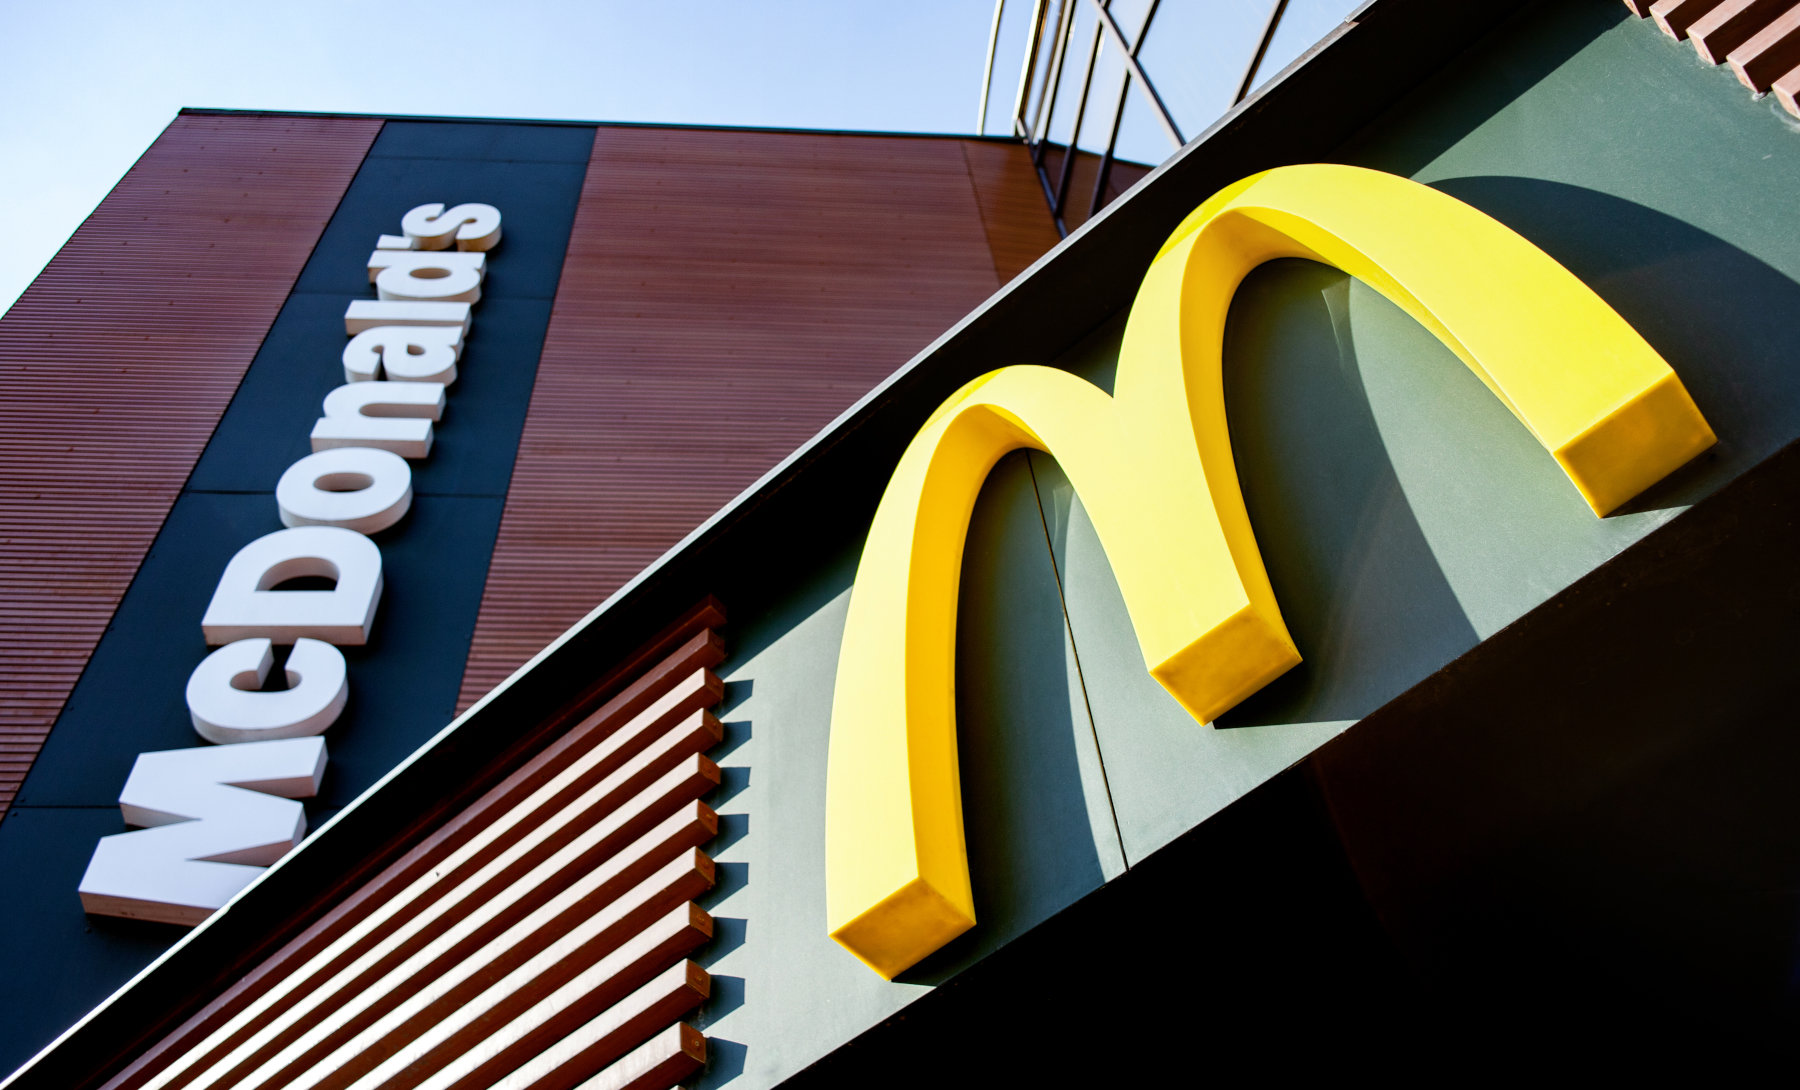 Παλαιό Φάληρο: Εισβολή ληστών στα McDonald’s – Ακινητοποίησαν προσωπικό και πελάτες υπό την απειλή όπλου